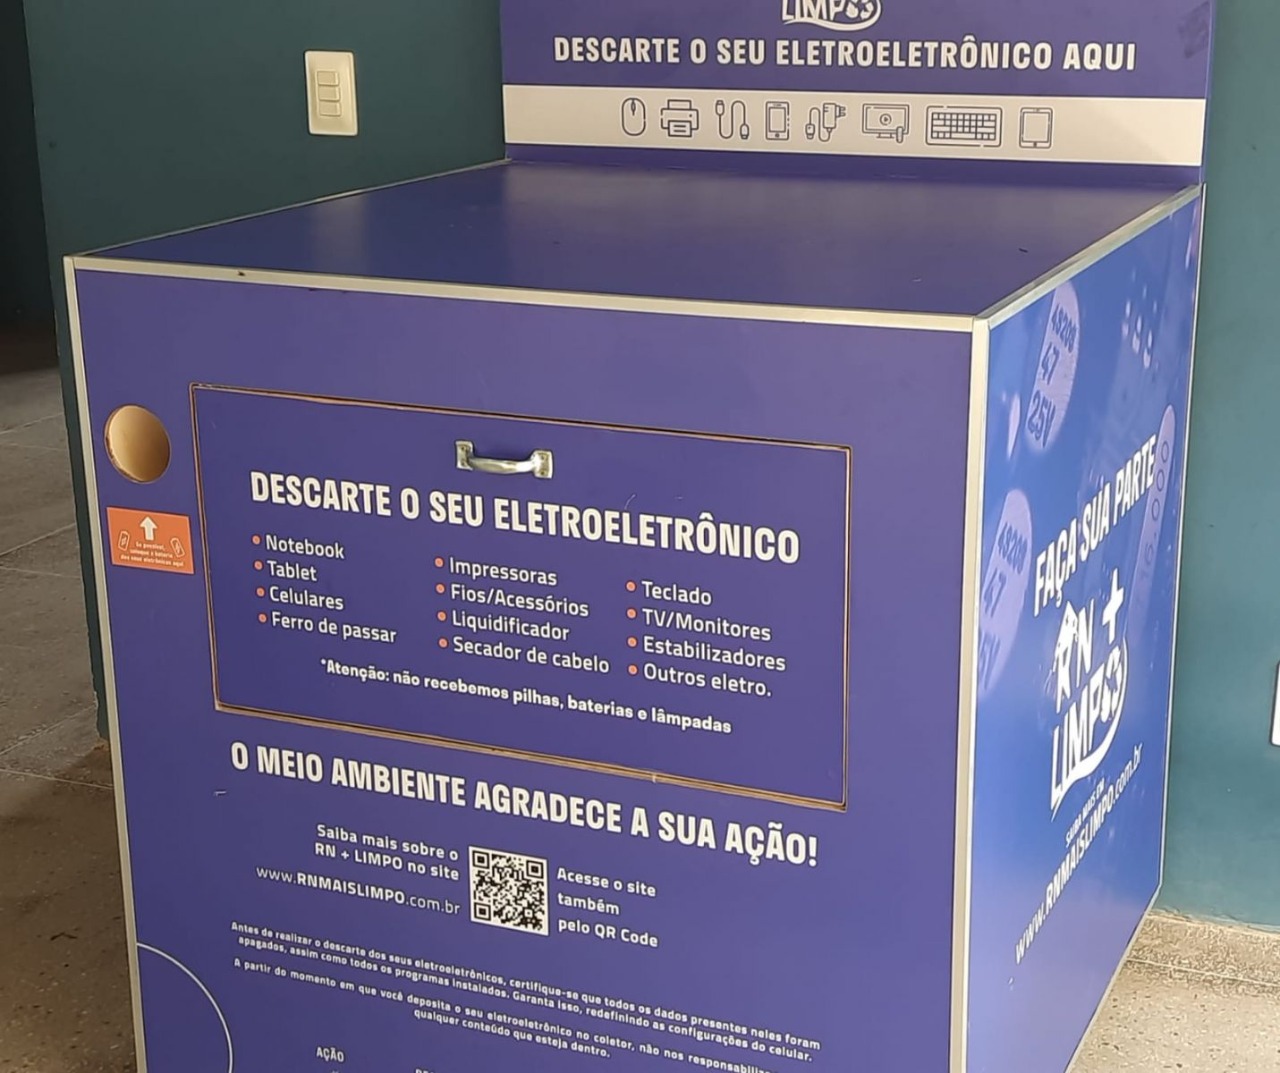 Prefeitura de Mossoró disponibilizará coletores para descarte de resíduos eletrônicos